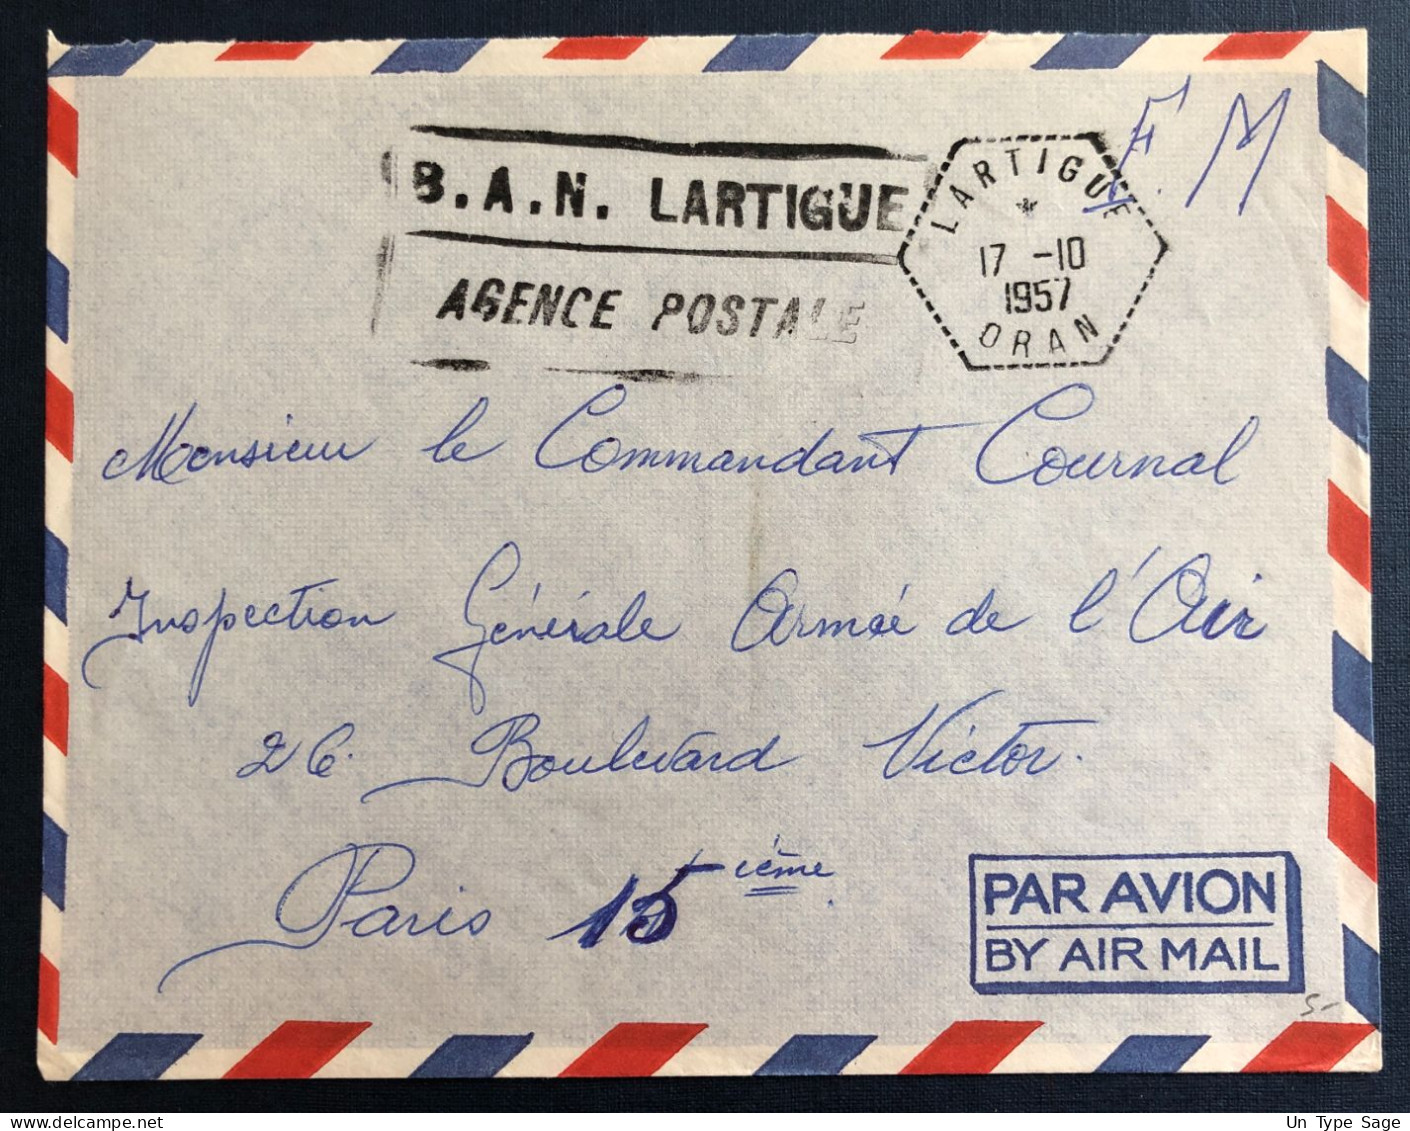 Algérie, Sur Enveloppe TAD Lartigue, Oran 17.10.1957 + Griffe B.A.N. LARTIGUE / AGENCE POSTALE - (B3349) - Lettres & Documents